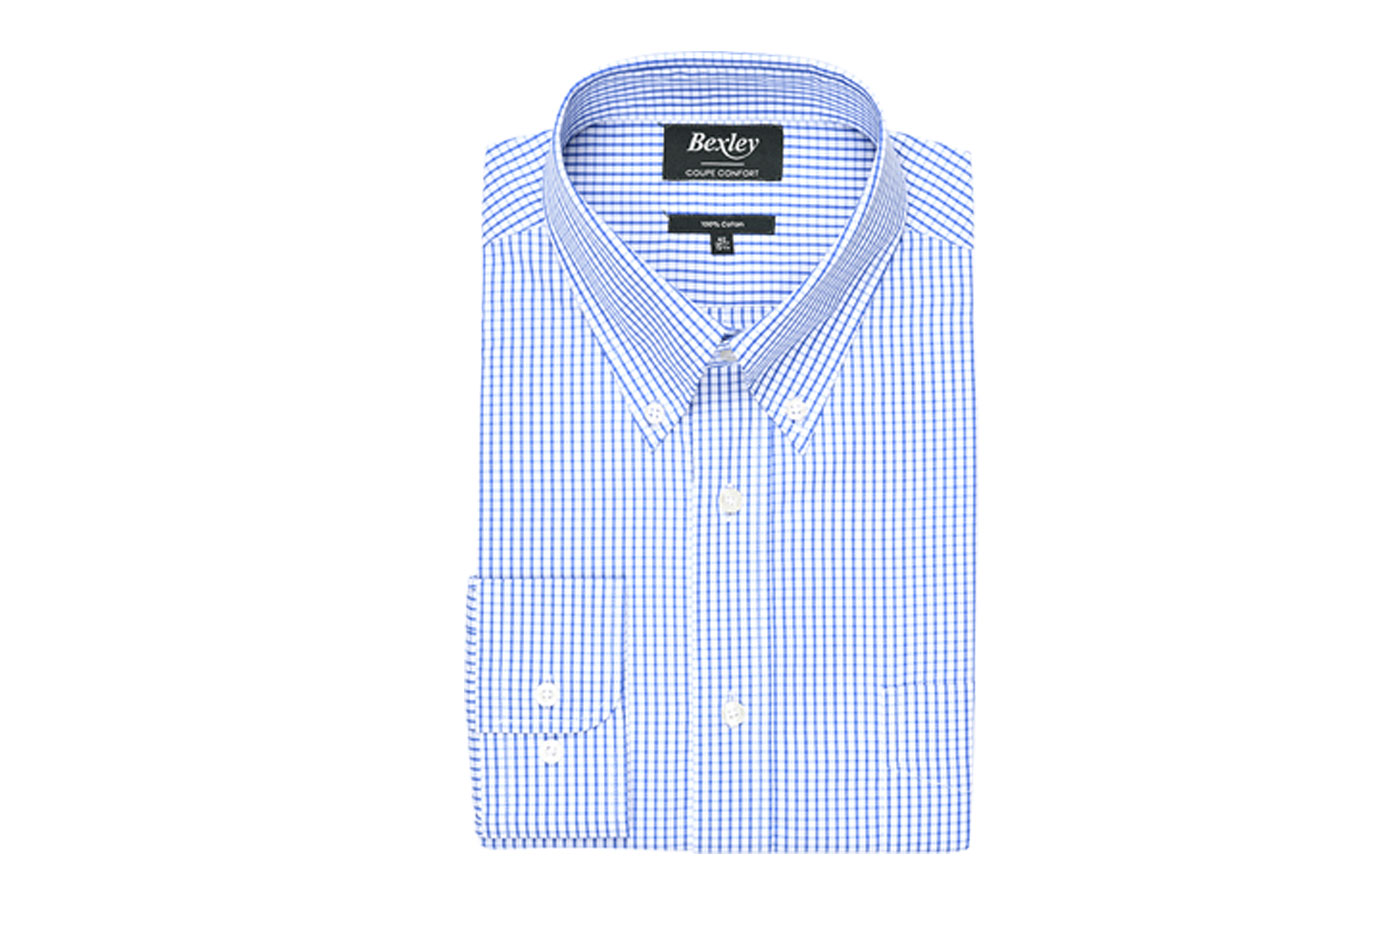 bexley chemise homme 100% coton, bleu et blanc, manches longues, coupe confort